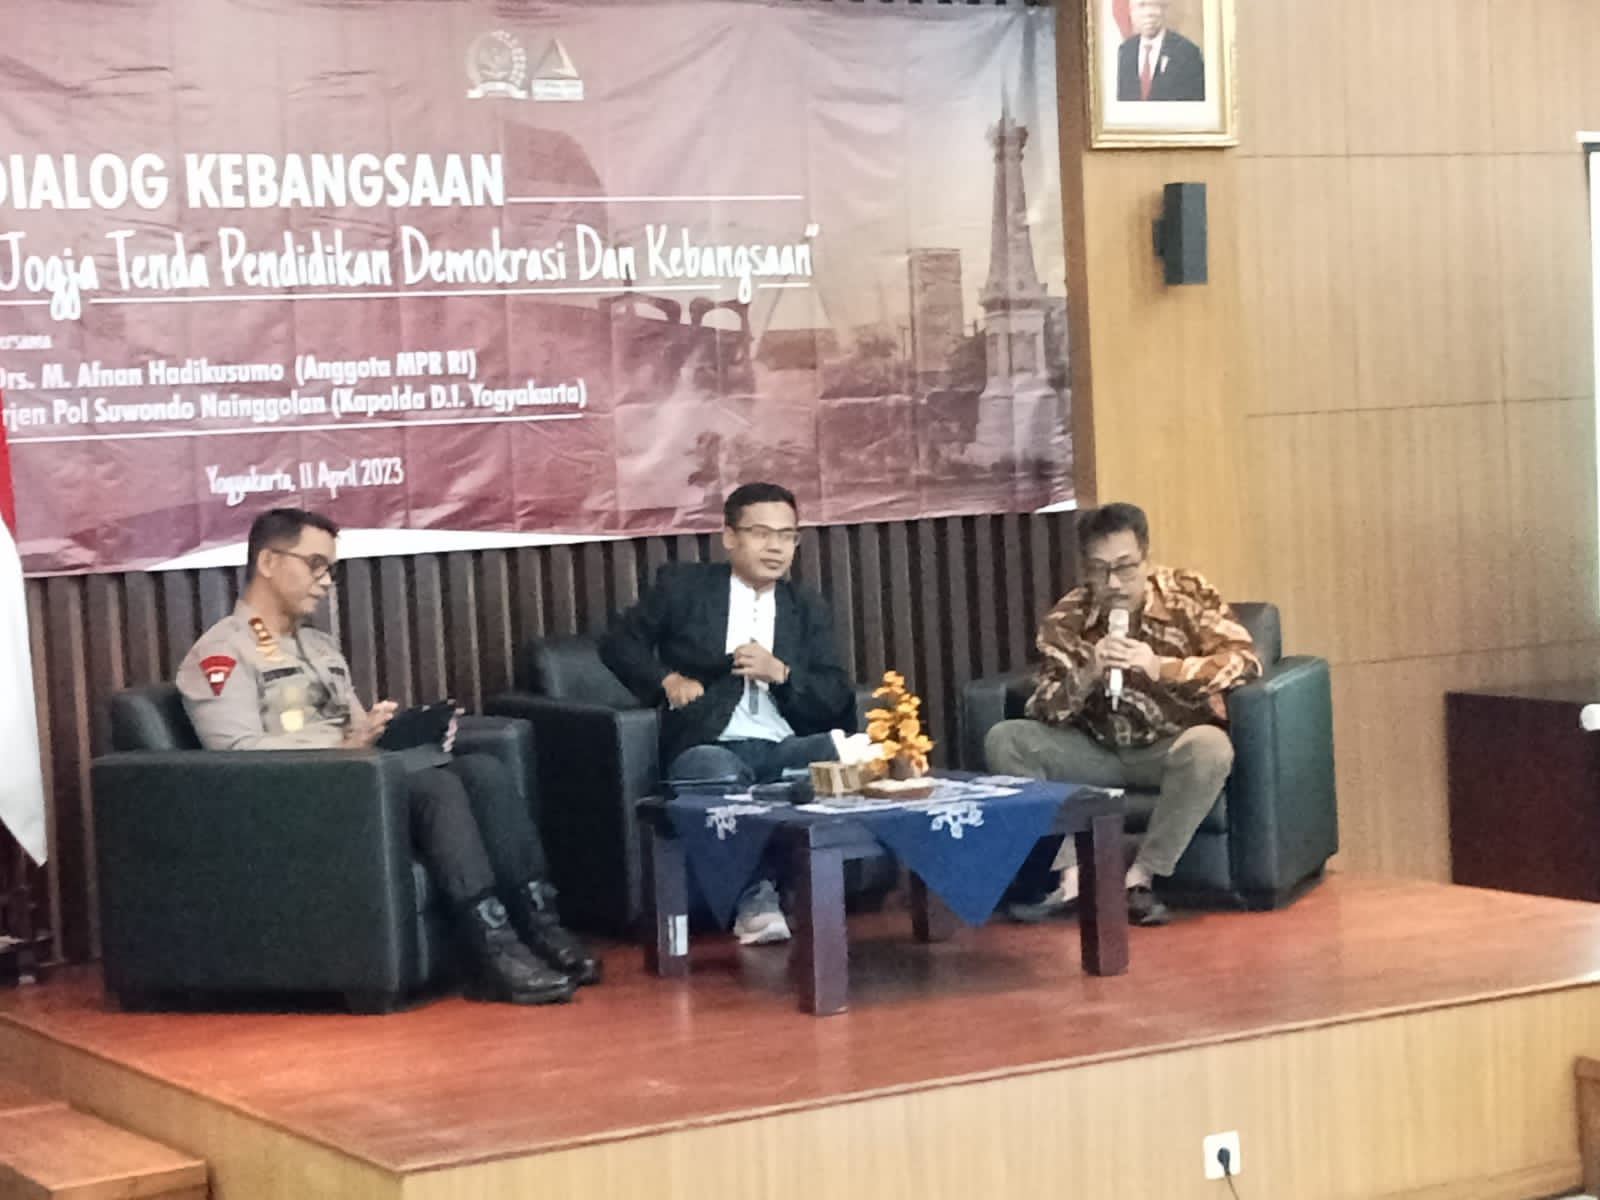 Yogyakarta Tenda Pendidikan, Kebangsaan dan Demokrasi